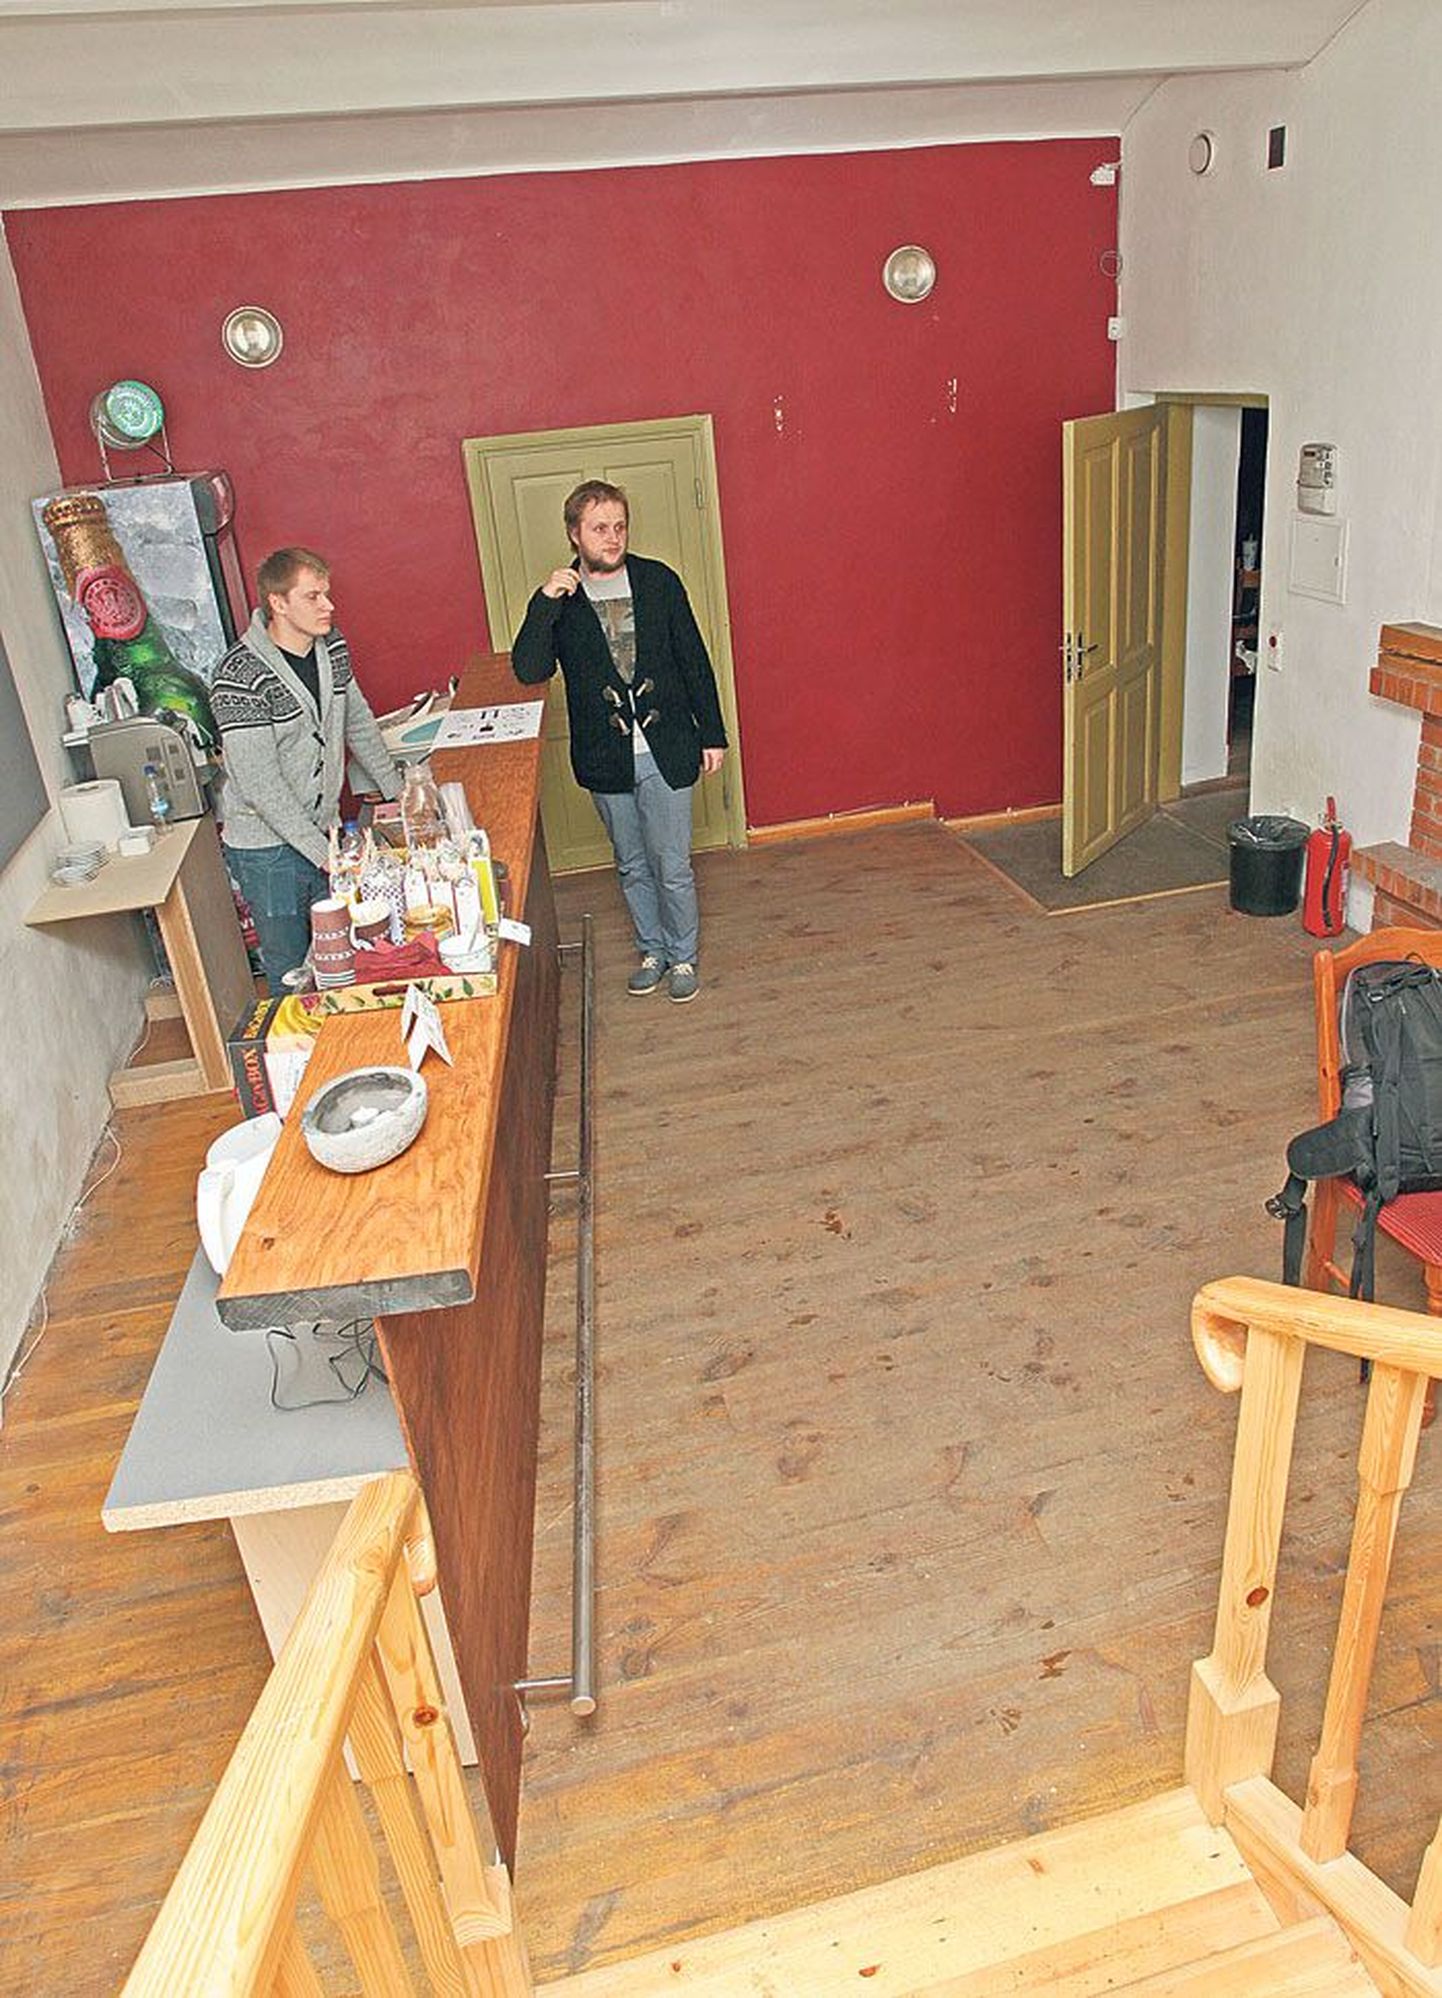 8. veebruaril Tartu kirjandusmajas (Vanemuise 19) avatud kultuurilokaali Arhiiv baarileti juures räägivad oma kavatsustest Juhan Kari (vasakult) ja Villem Varik. Seintel on Edgar Tedresaare maalid. Sisustus ei ole veel lõplikult valmis.